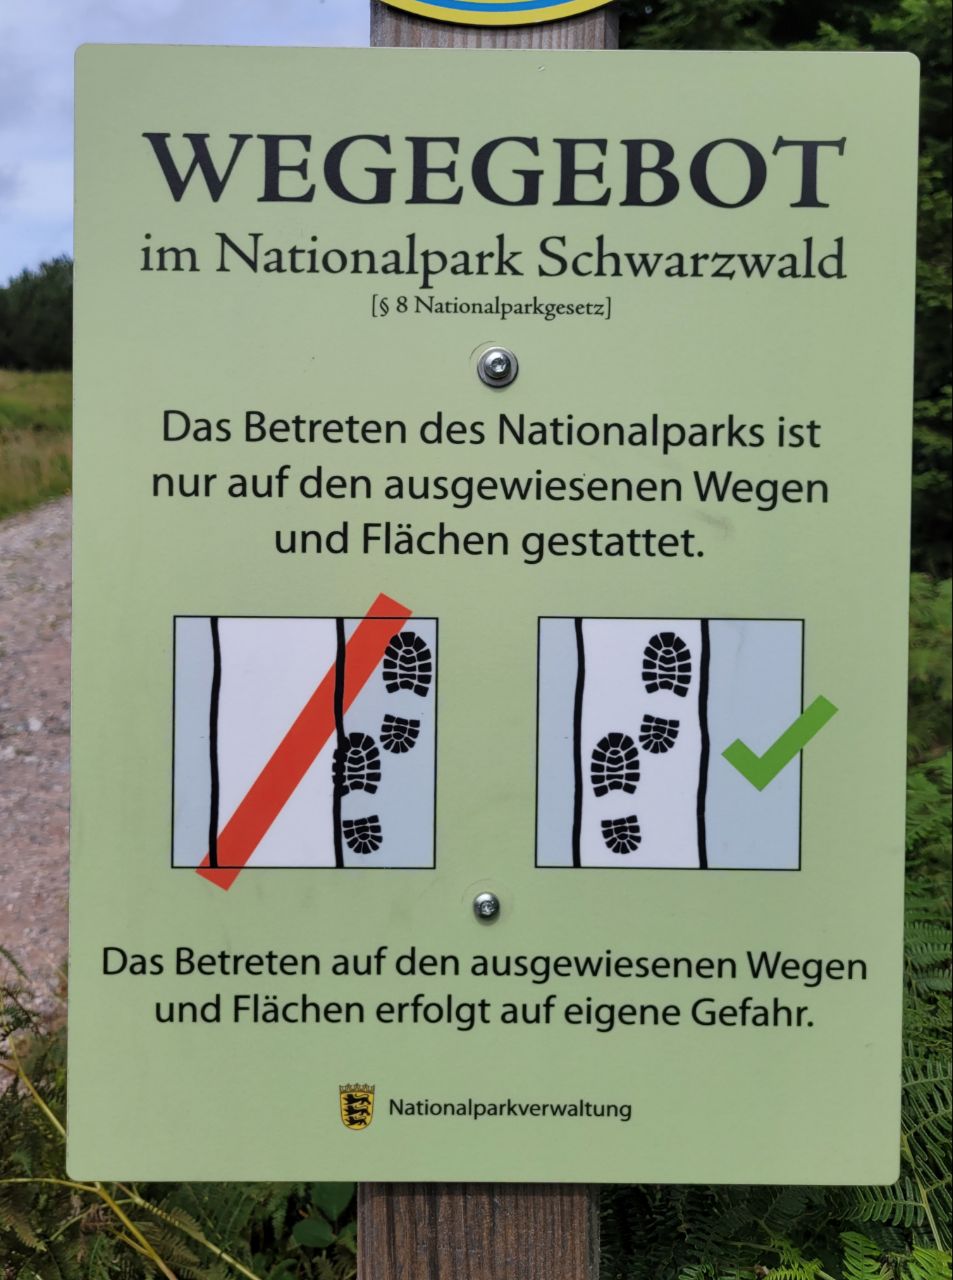 Abbildung 2 zeigt ein Schild, das das Wegegebot im Nationalpark grafisch darstellt.